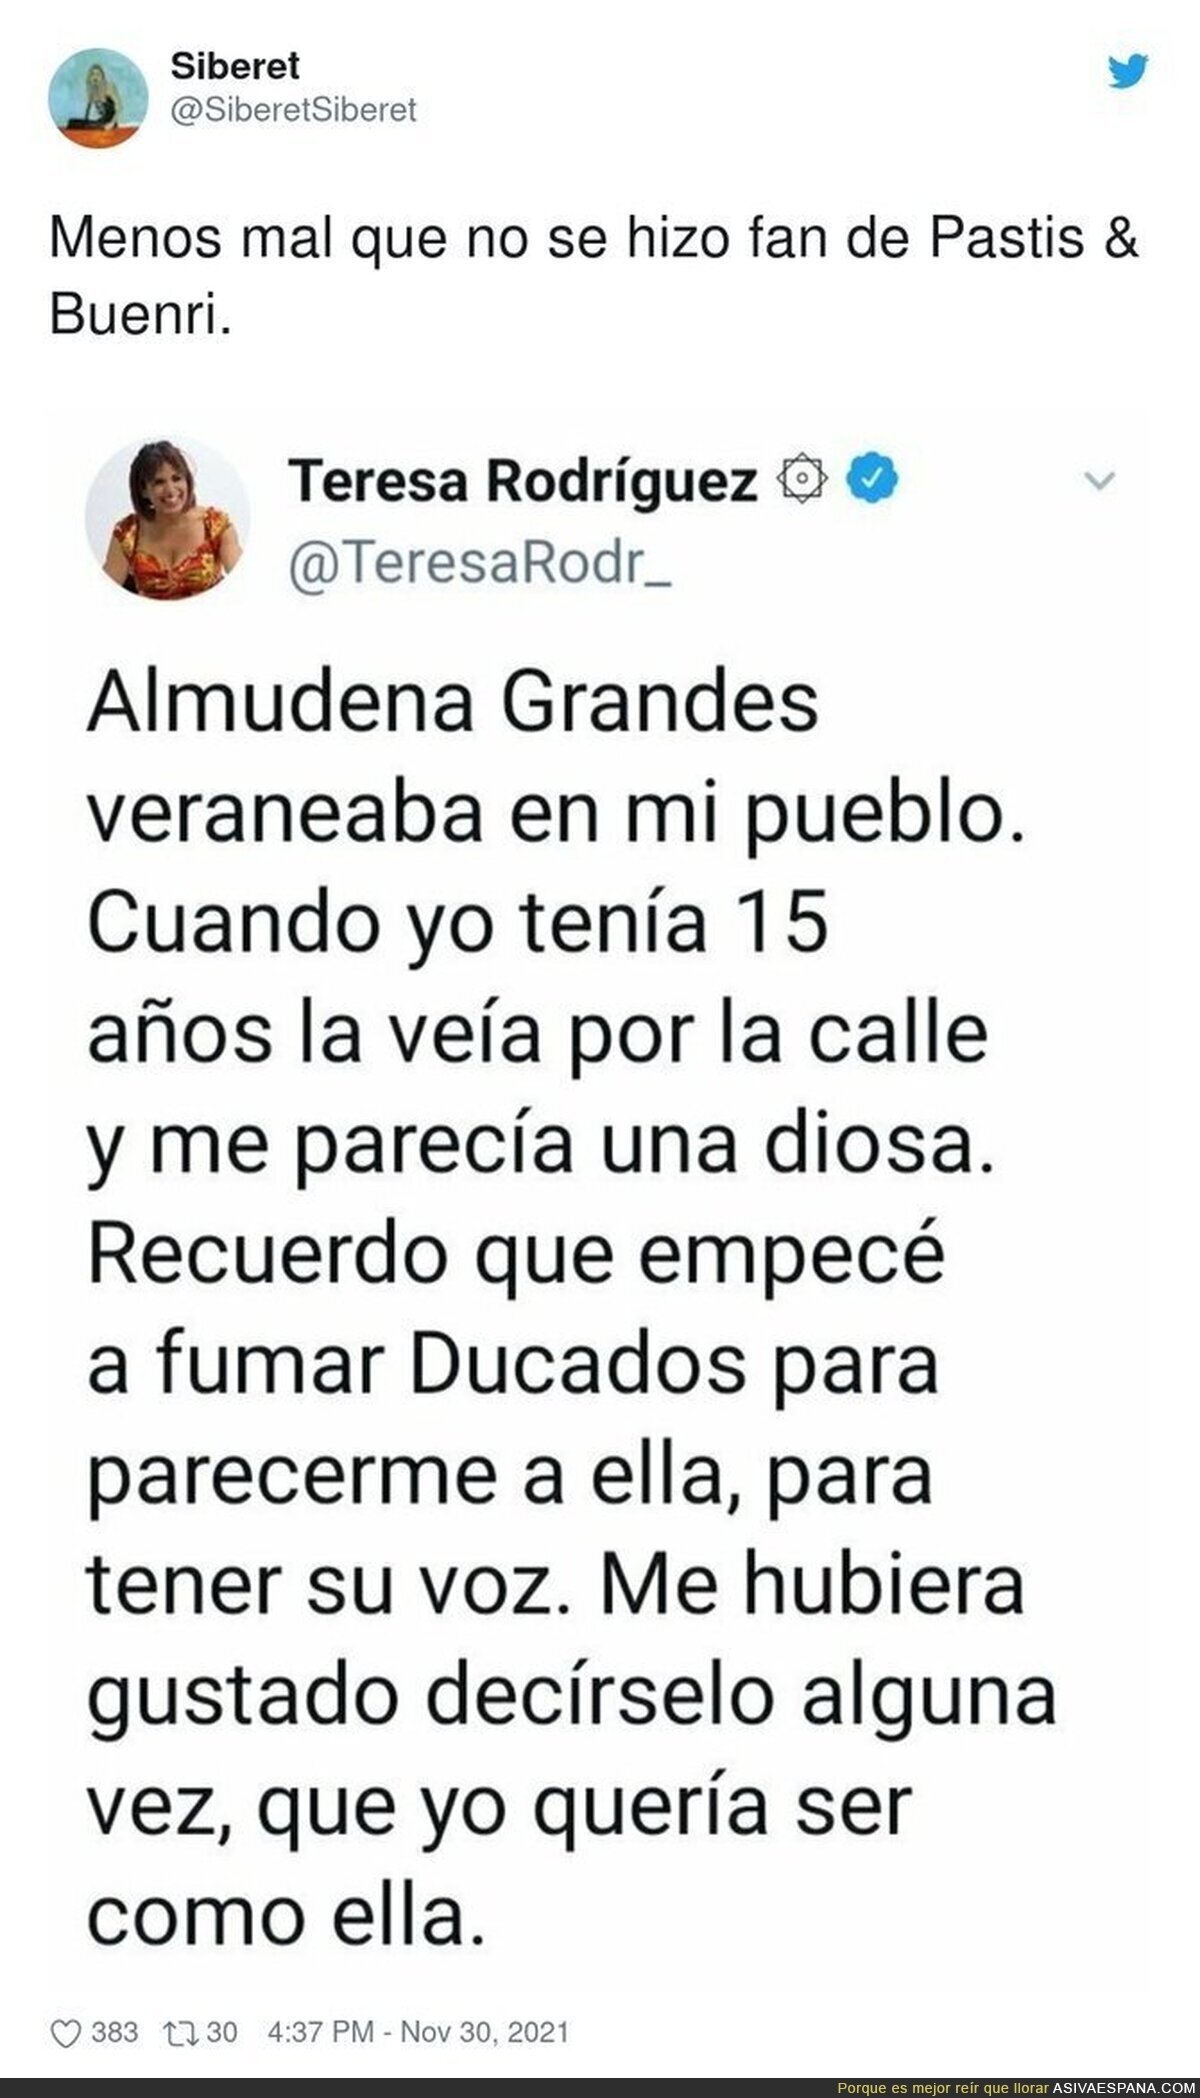 El ejemplo de Teresa Rodríguez